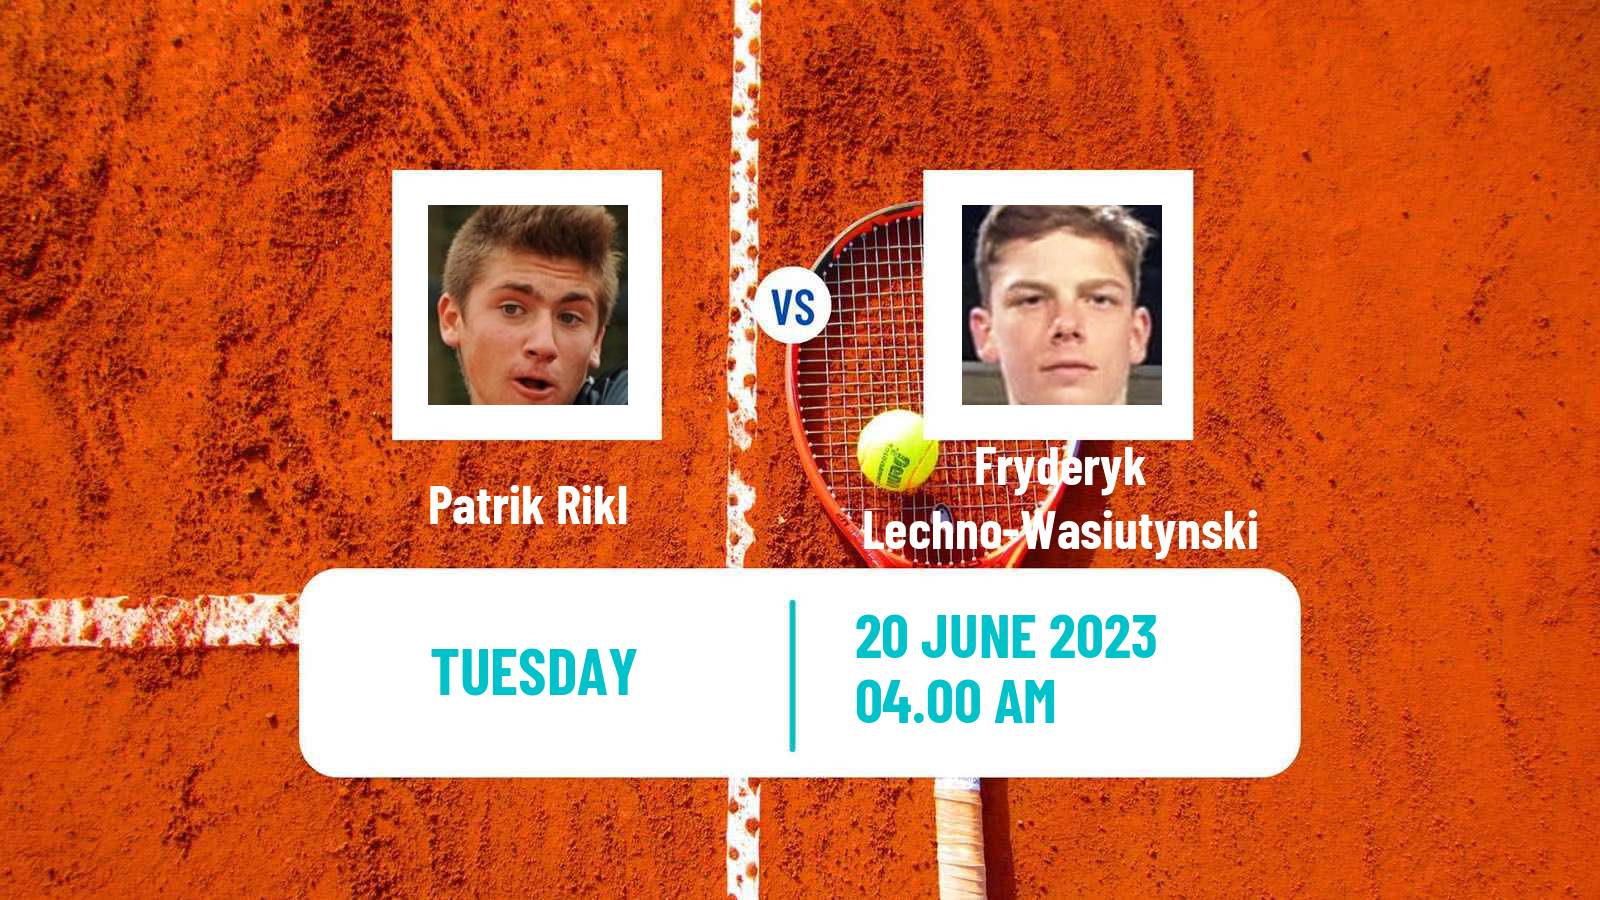 Tennis ITF M25 Poprad Men Patrik Rikl - Fryderyk Lechno-Wasiutynski